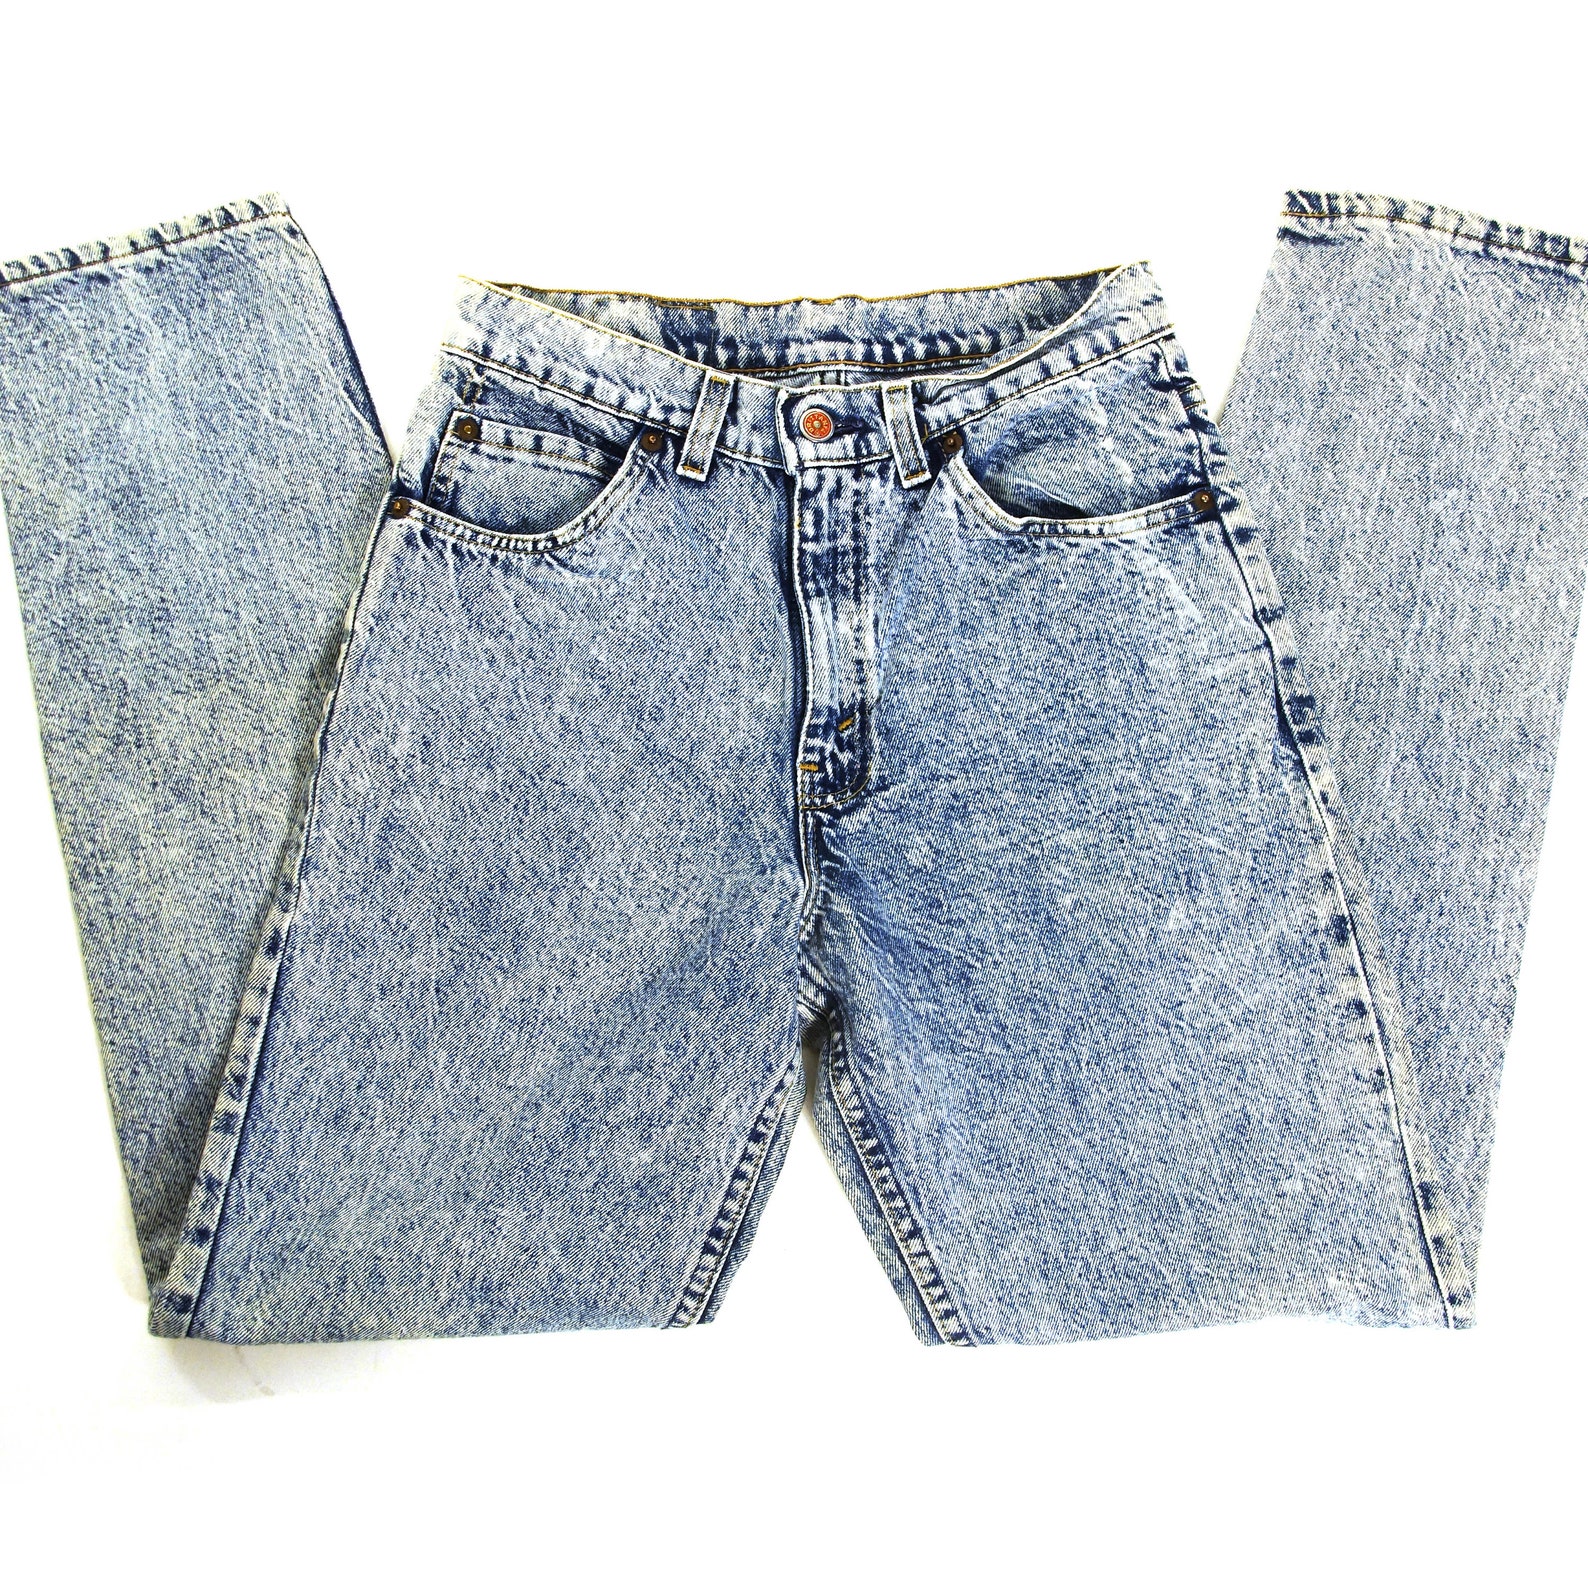 Acid Wash Jeans Vintage 80s High Waisted Denim Women's - Etsy